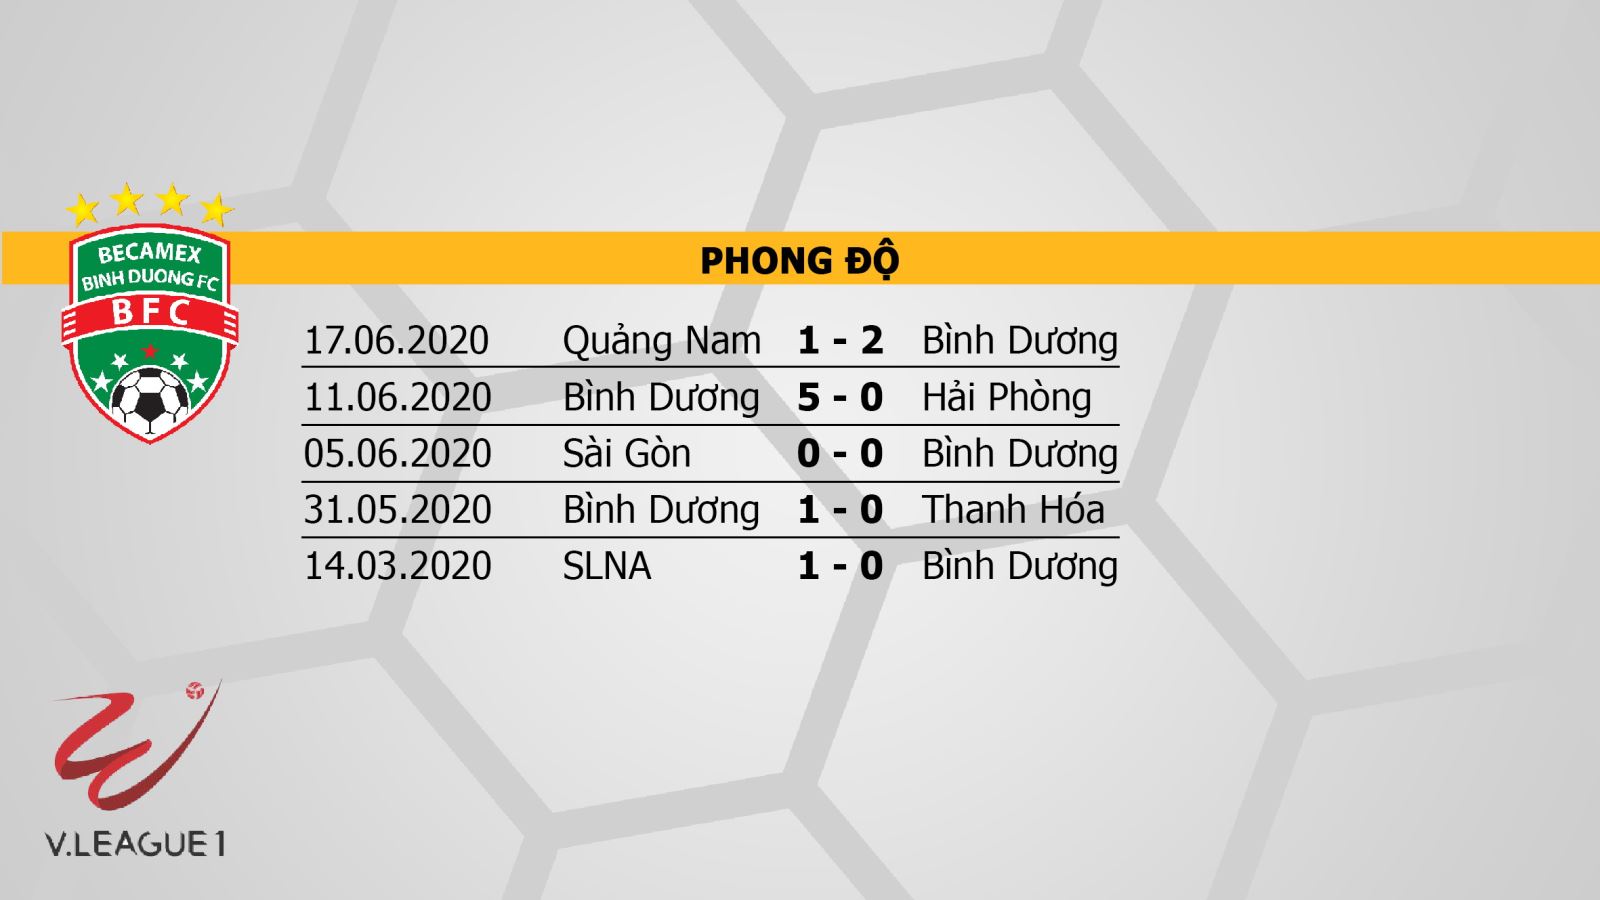 Becamex Bình Dương vs Hà Nội, Bình Dương đấu với Hà Nội, nhận định, dự đoán, trực tiếp bóng đá, dự đoán, kèo bóng đá, V-League 